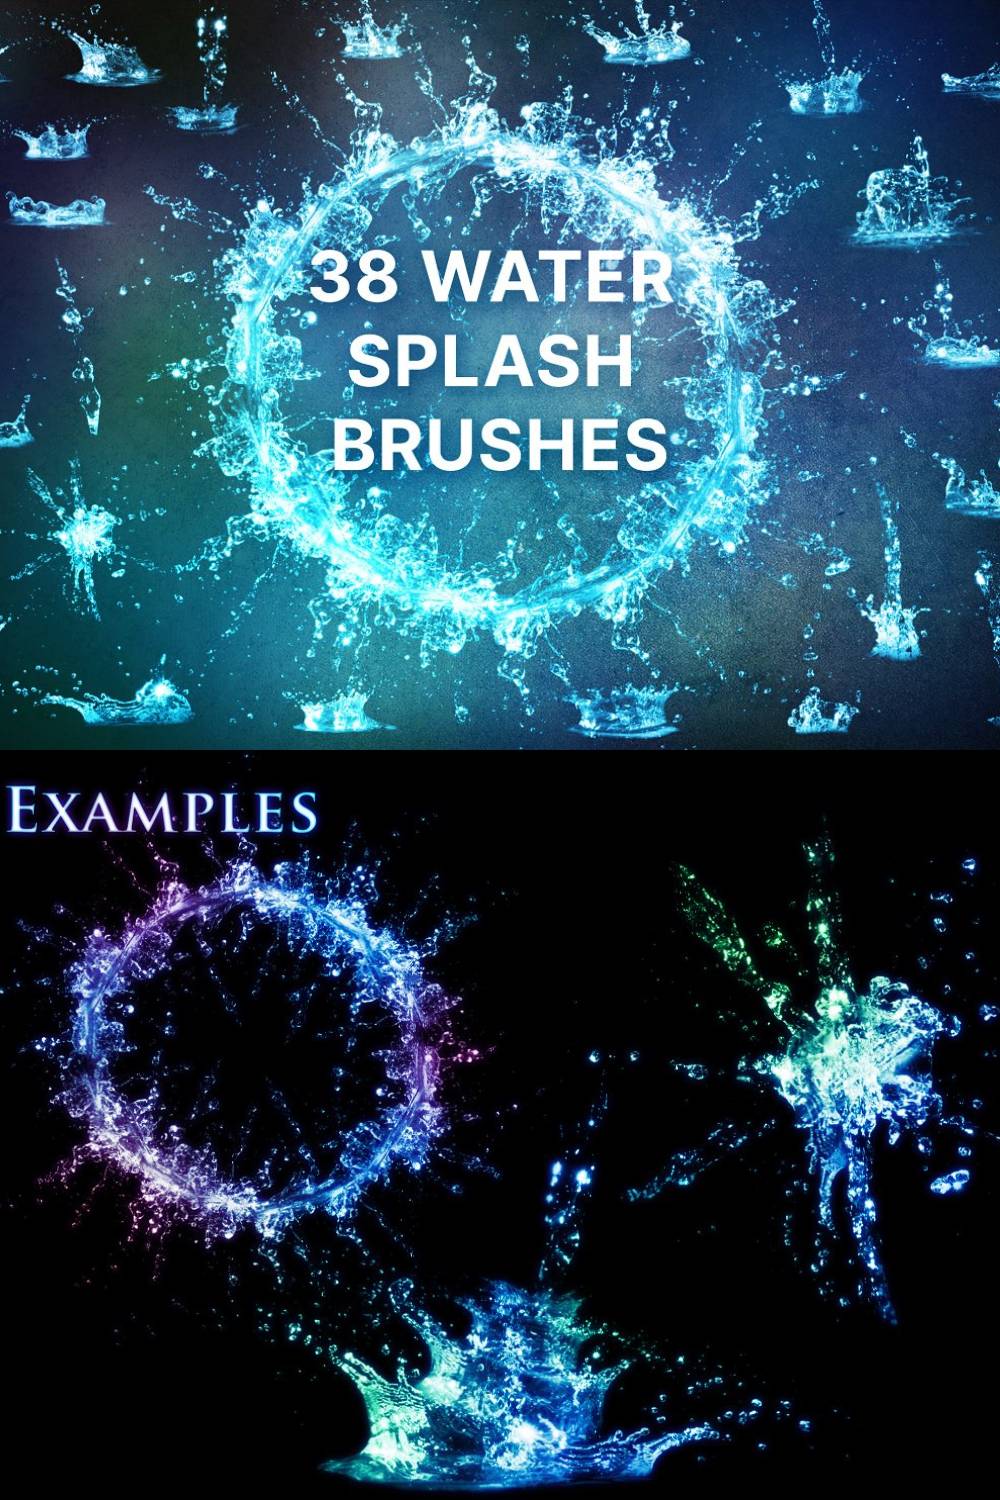 38 Water Splash Brushes Pinterest Cover.